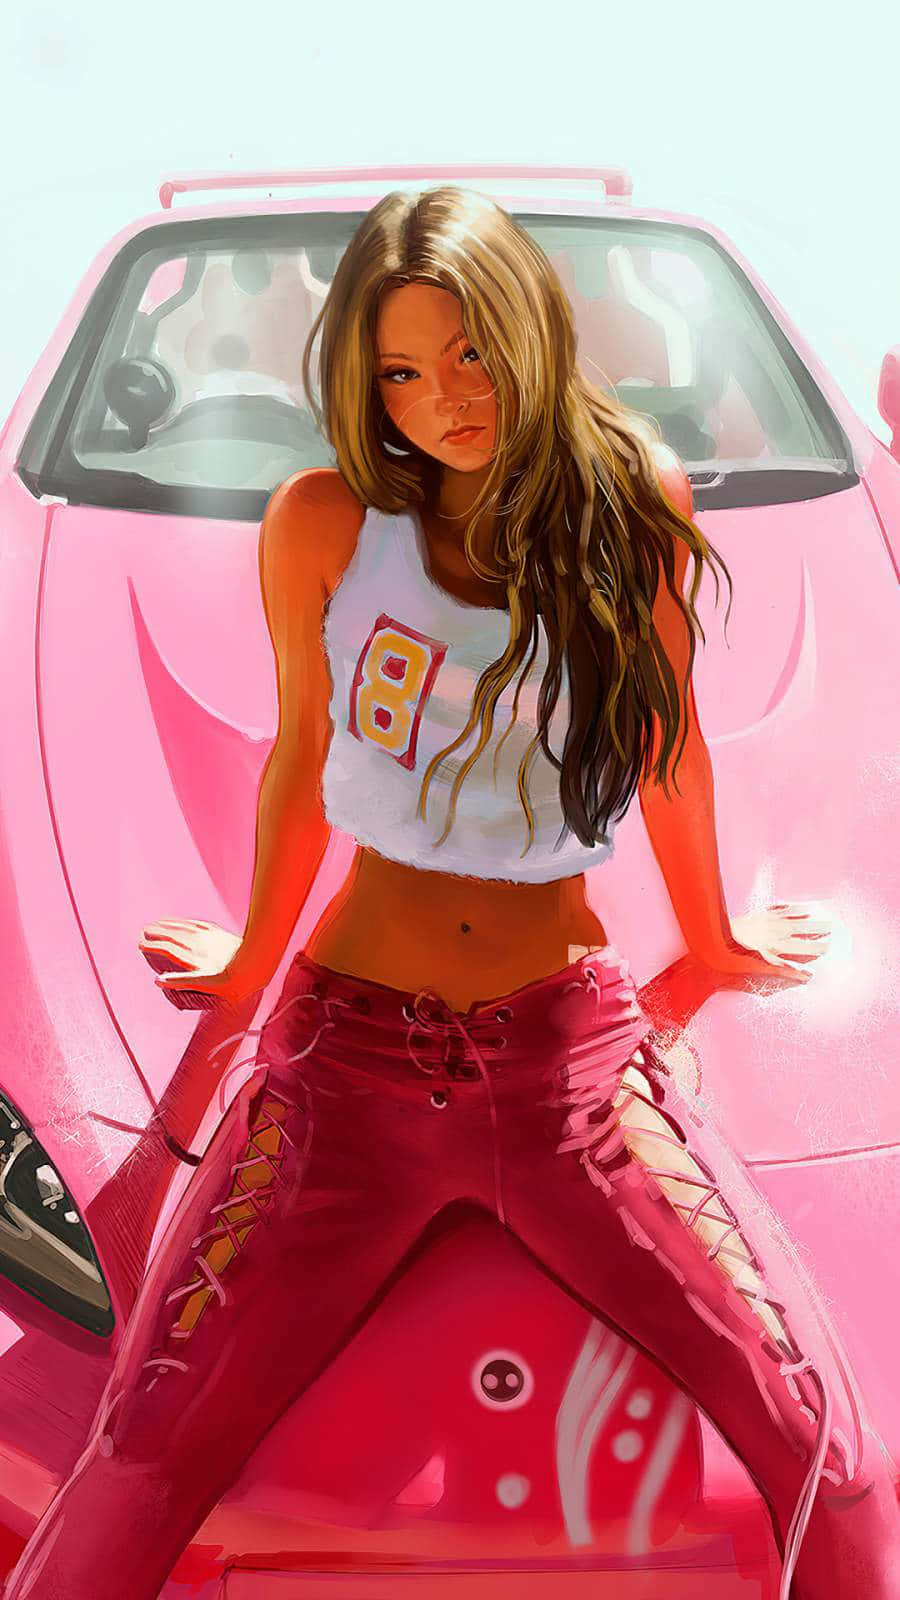 Einmädchen Sitzt Auf Einem Pinken Sportwagen Wallpaper